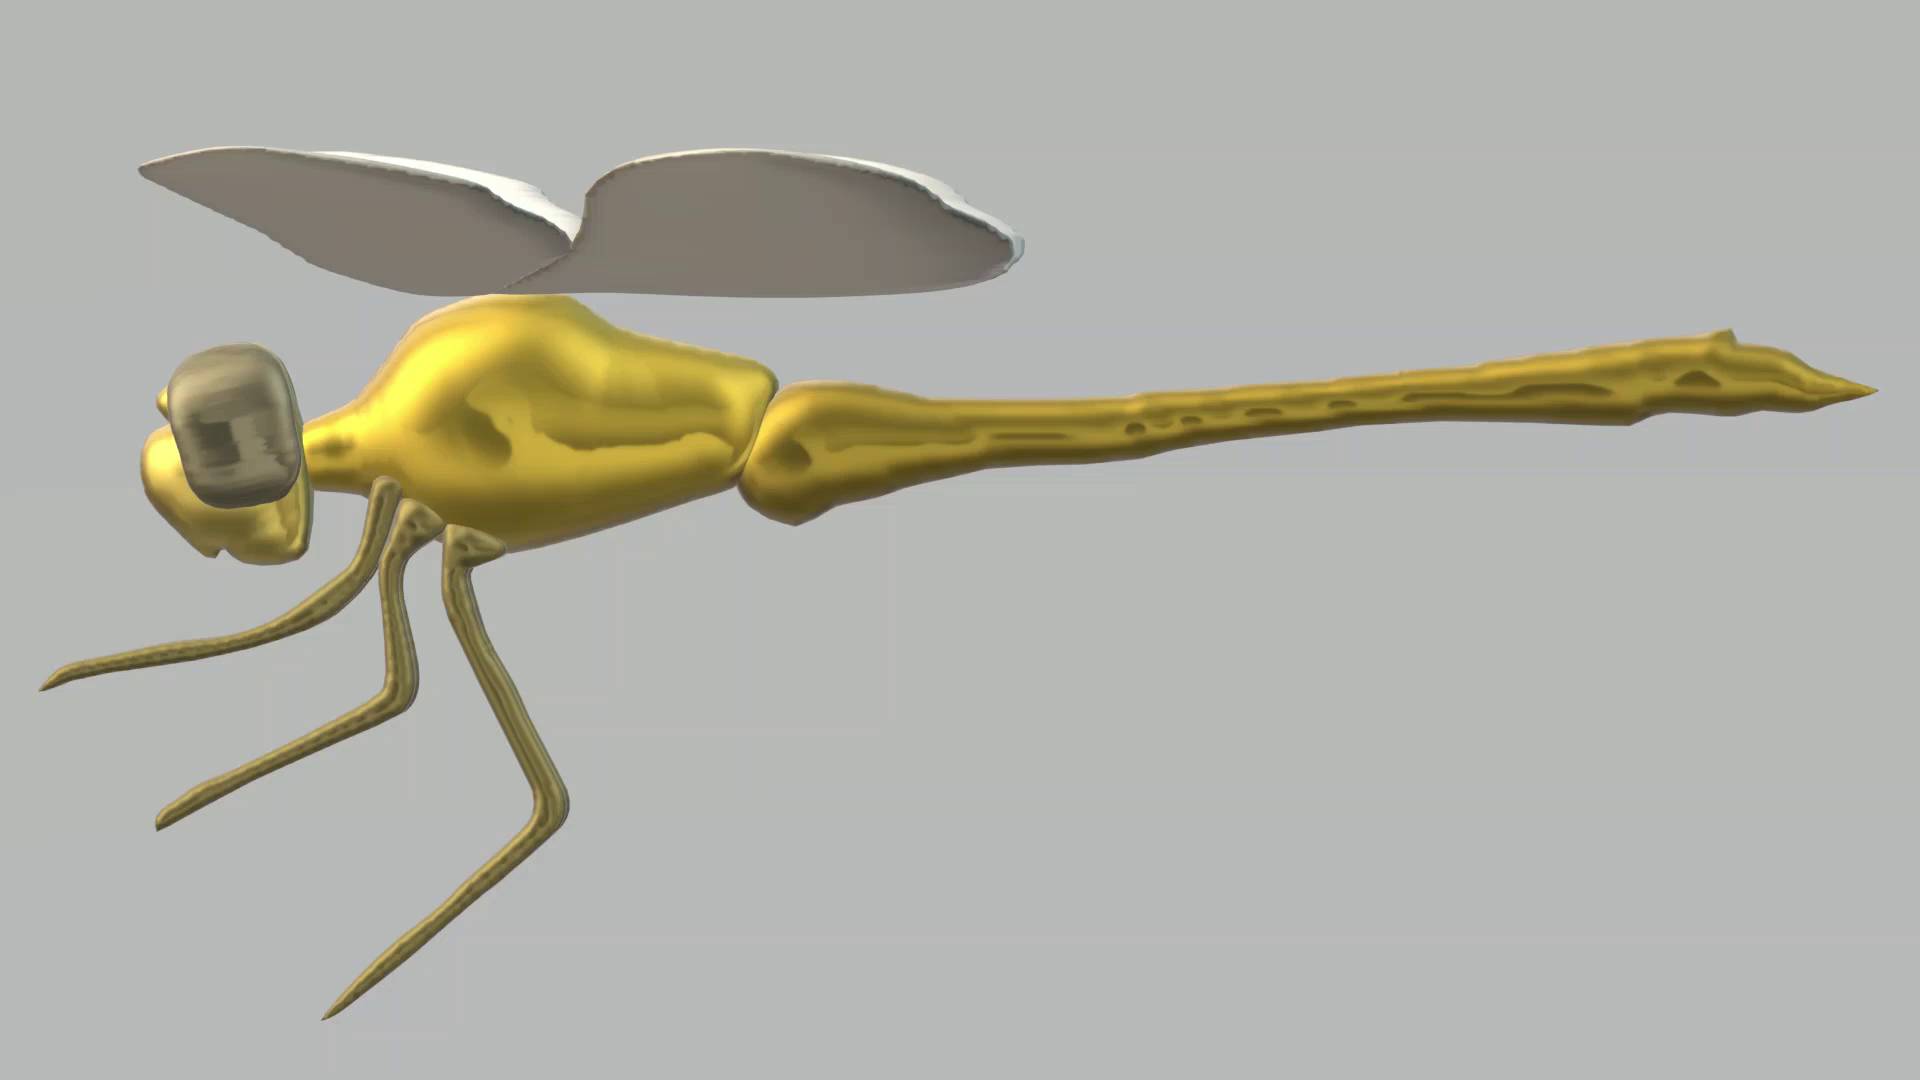 Нарисованная стрекоза обыкновенная, рисунок 3D